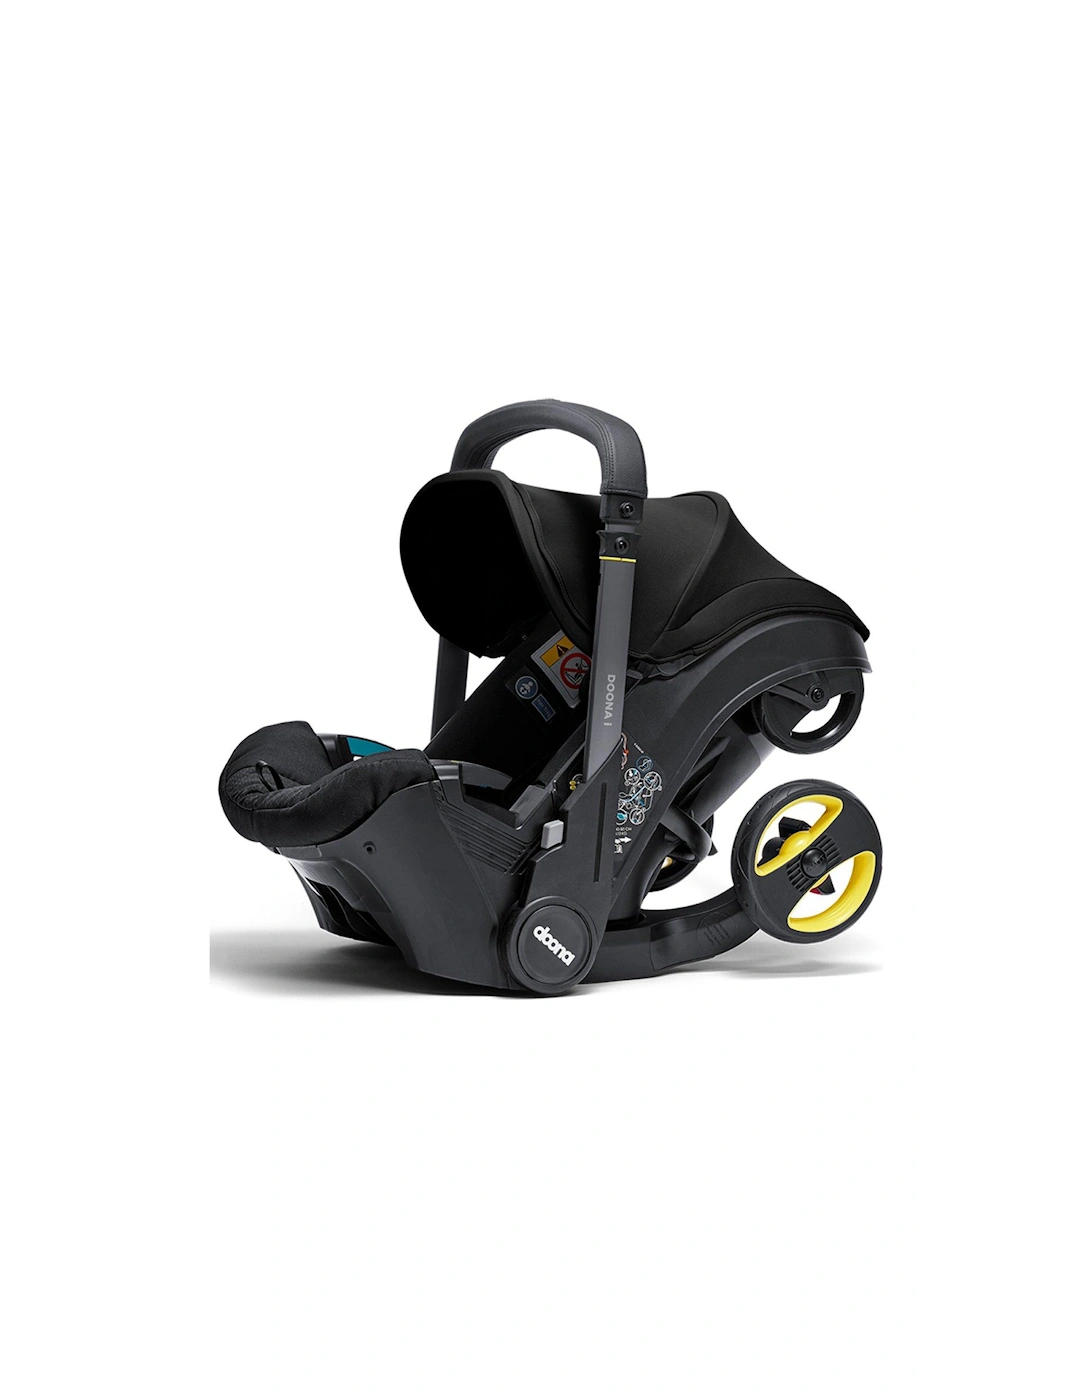 Doona-i Infant Car Seat - Nitro Black, 2 of 1